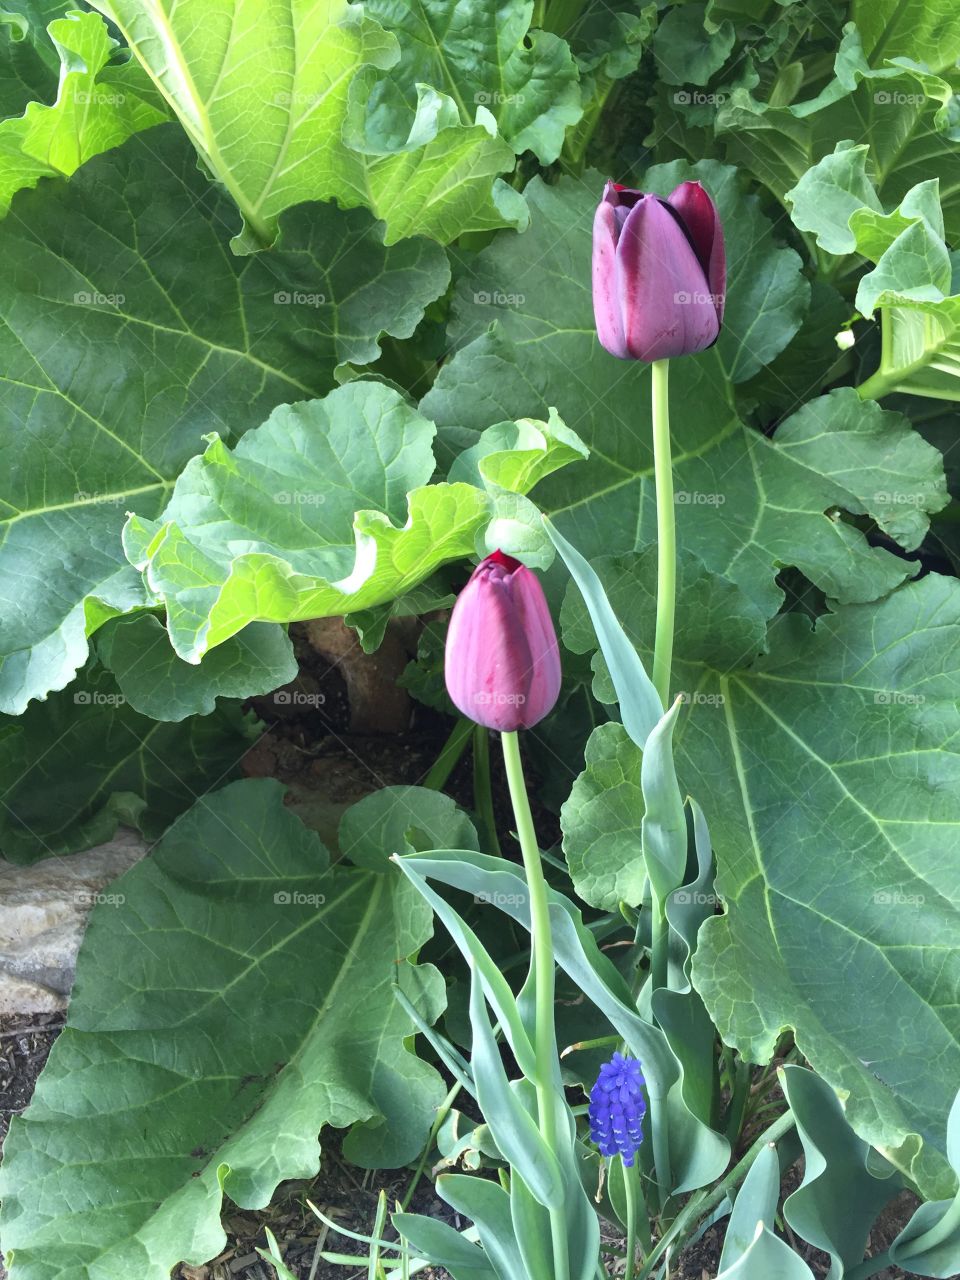 Purple Tulip and Rhubarb